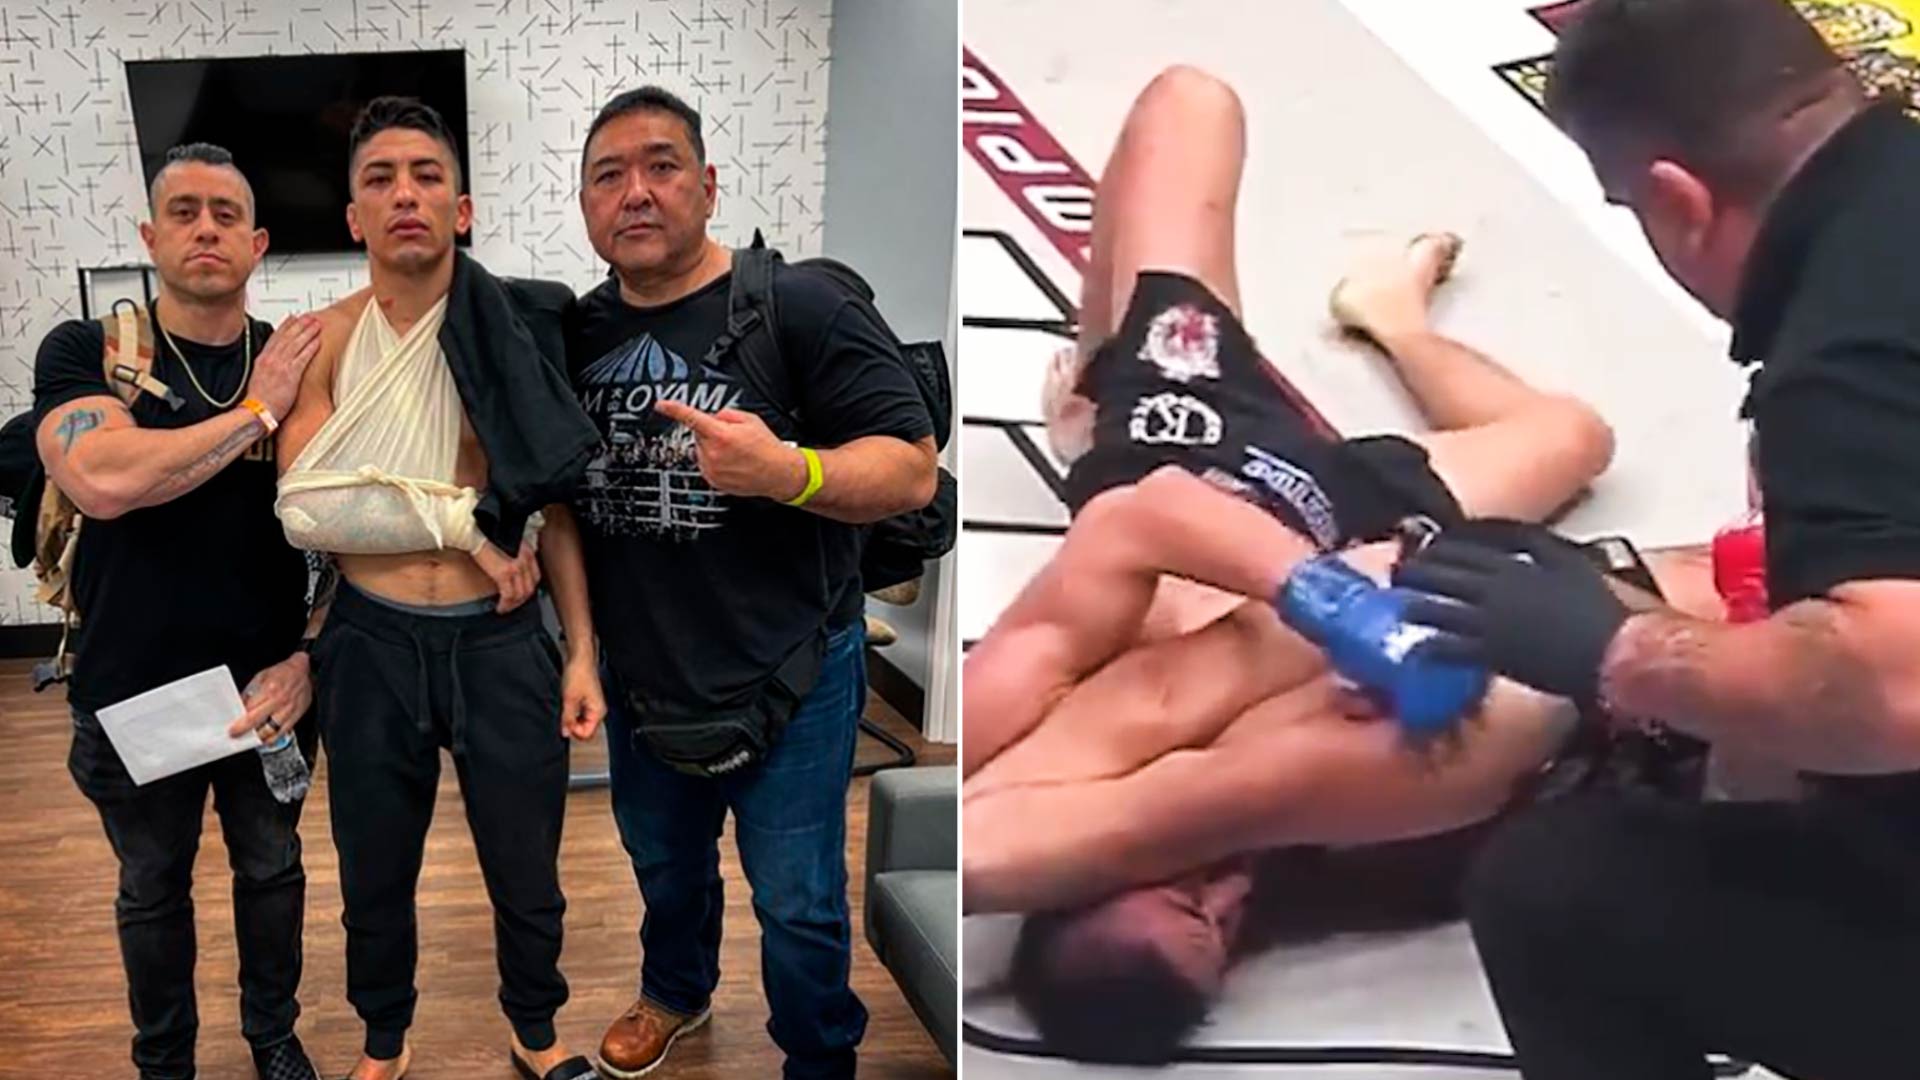 “El peor de la historia de MMA”: un árbitro tardó en detener un combate y uno de los luchadores quedó inconsciente